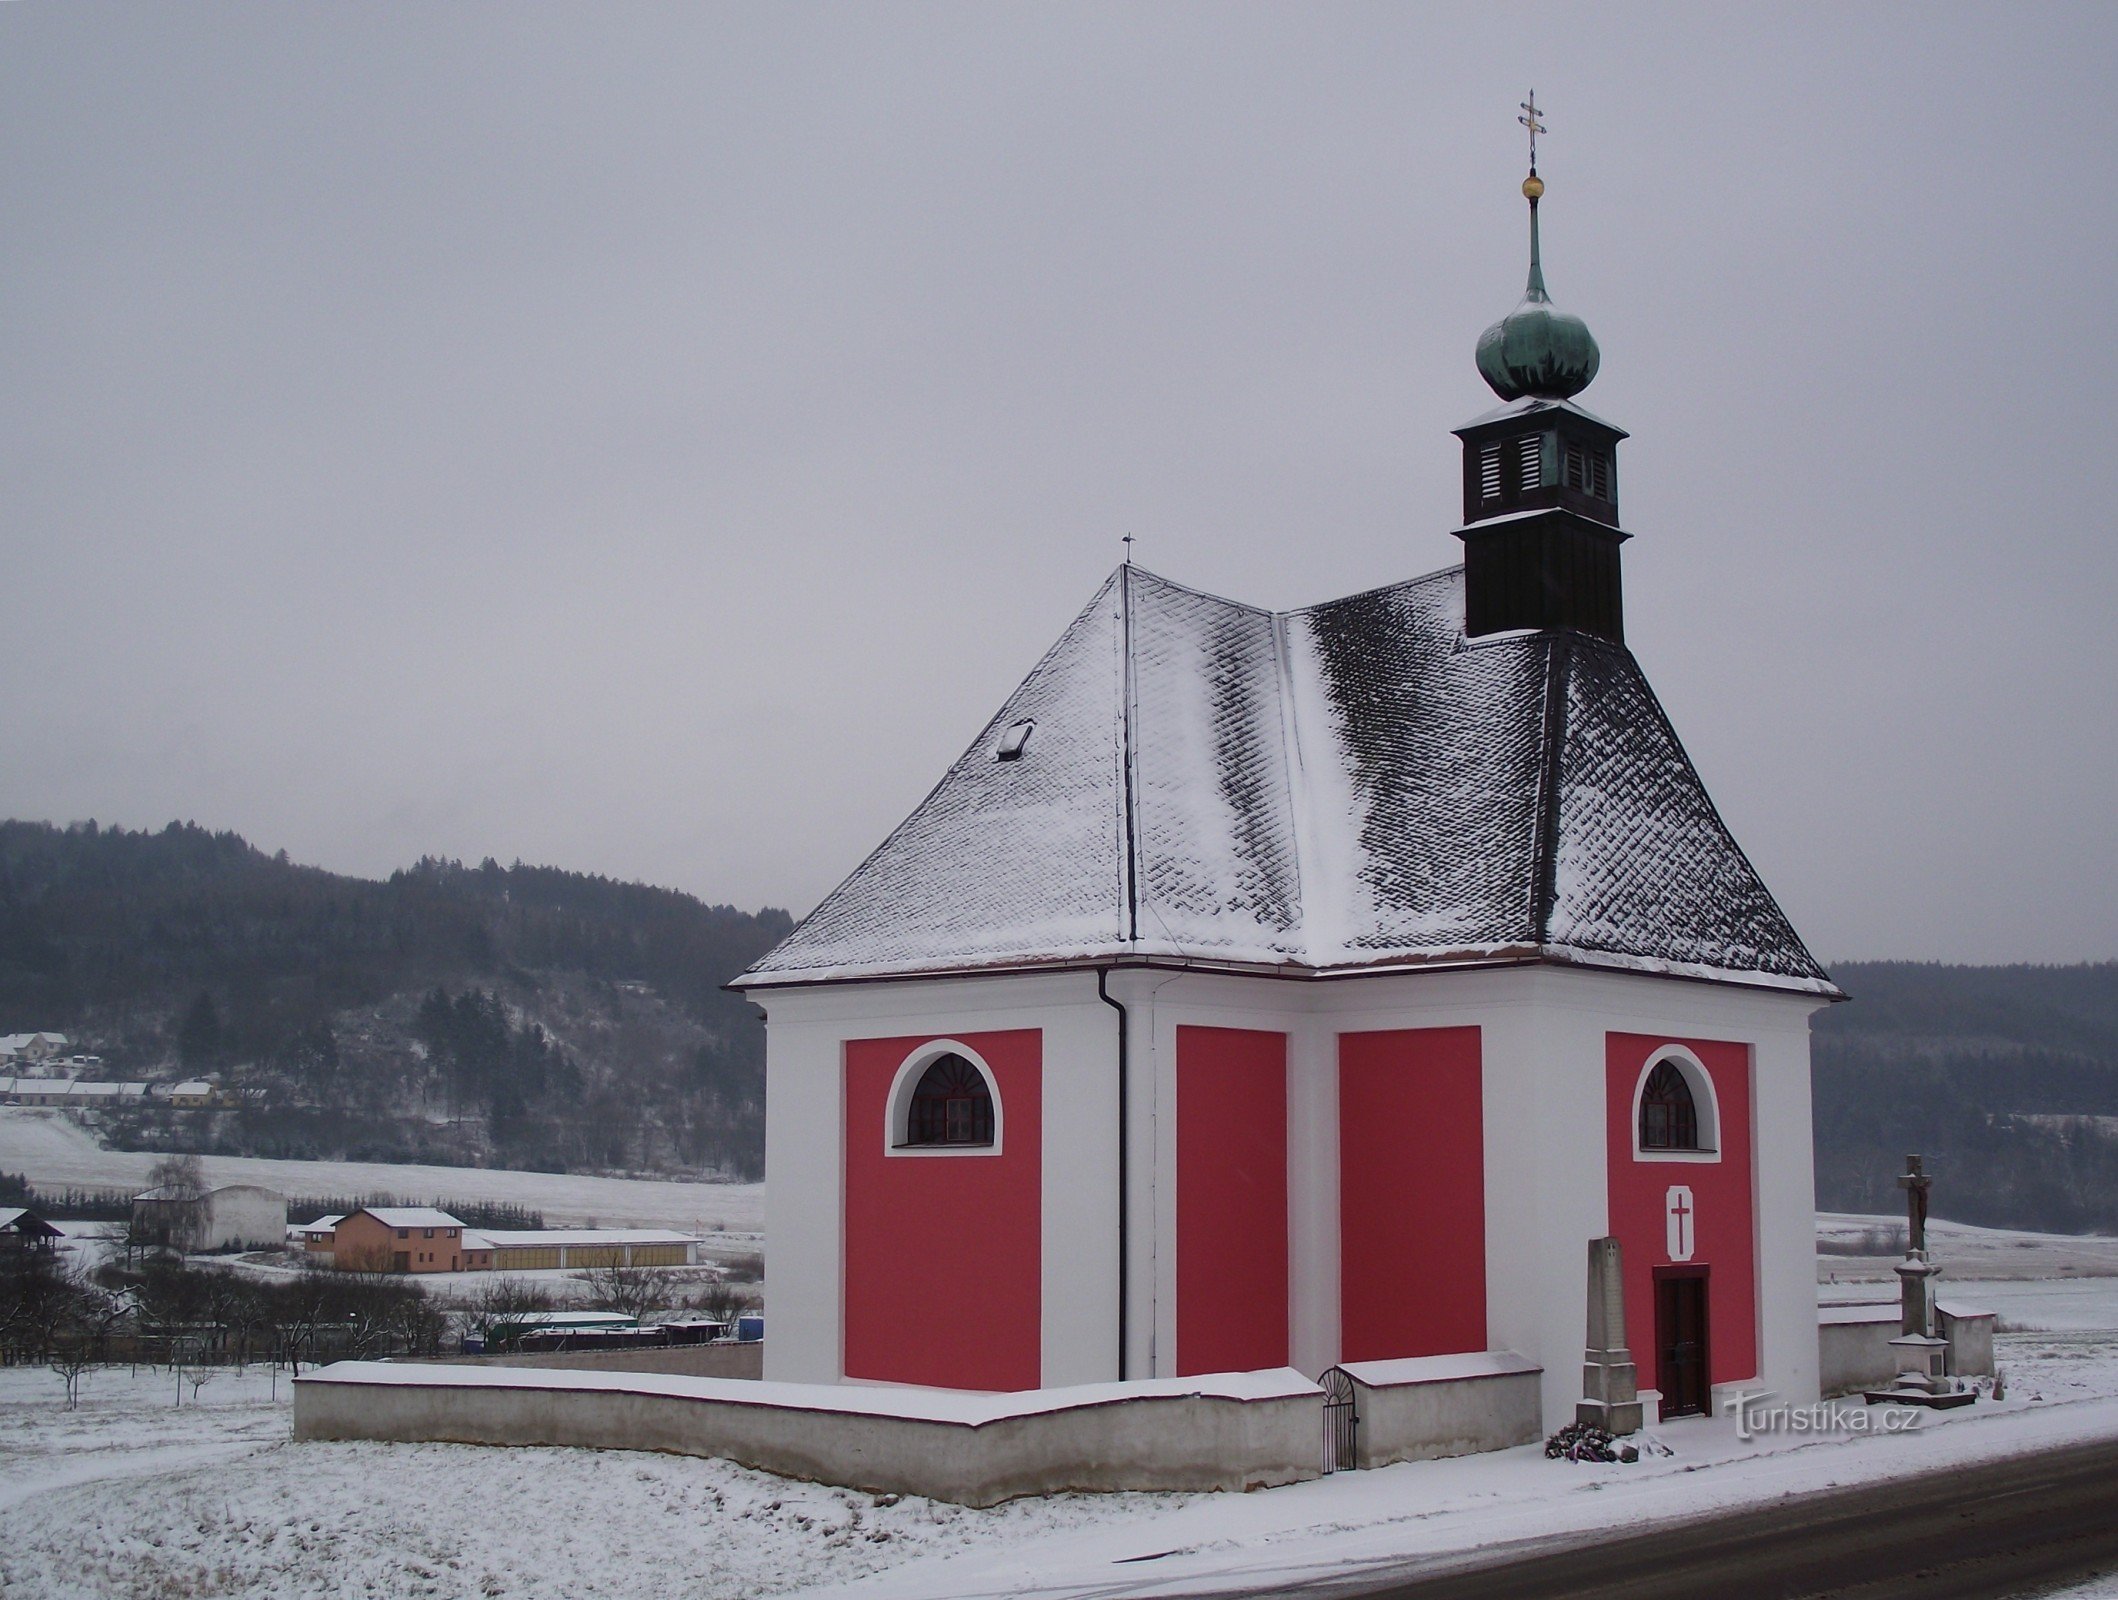 Vážany (perto de Boskovic) – Igreja da Anunciação da Virgem Maria